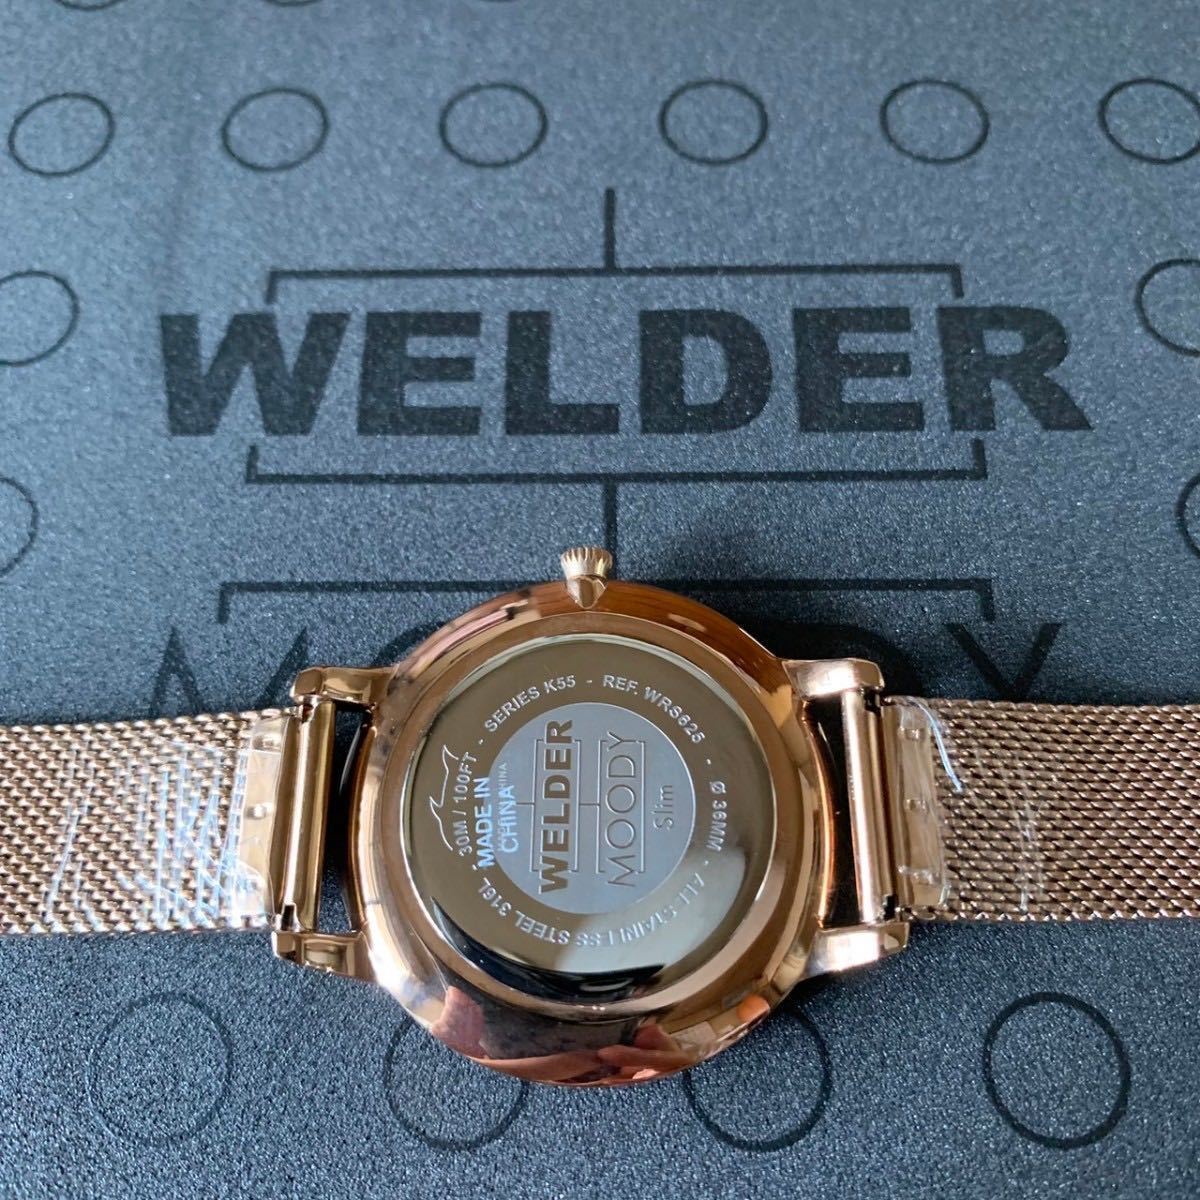 ウェルダー WELDER MOODY 腕時計 WWRC605 グリーン - 時計